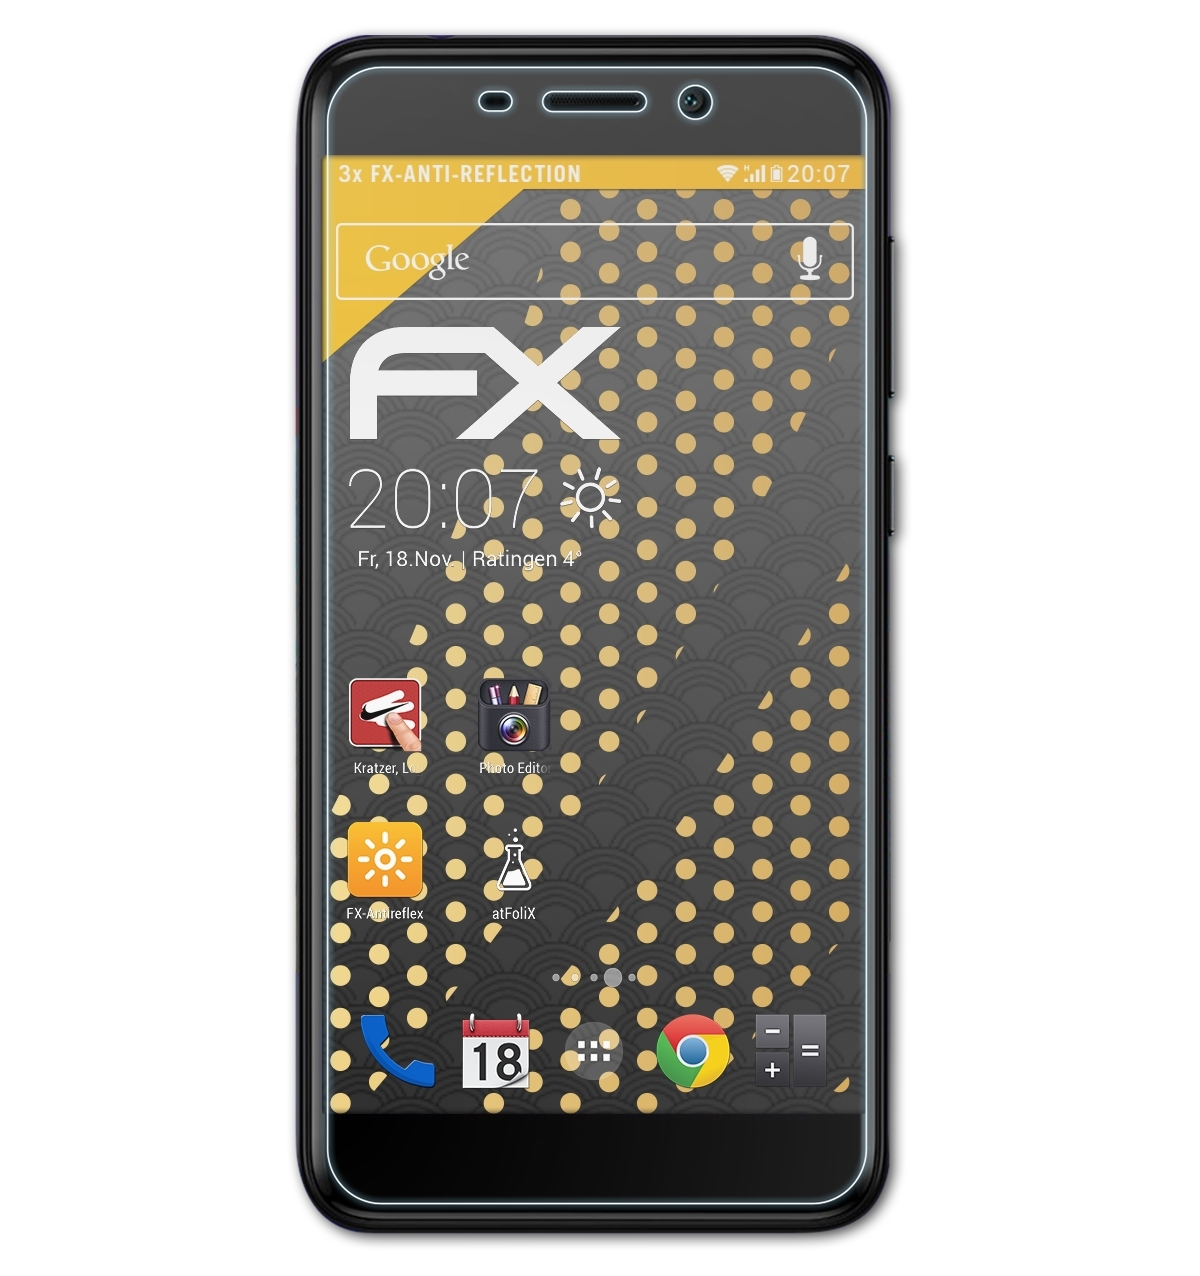 ATFOLIX 3x FX-Antireflex Honor Huawei Pro) Displayschutz(für 6C